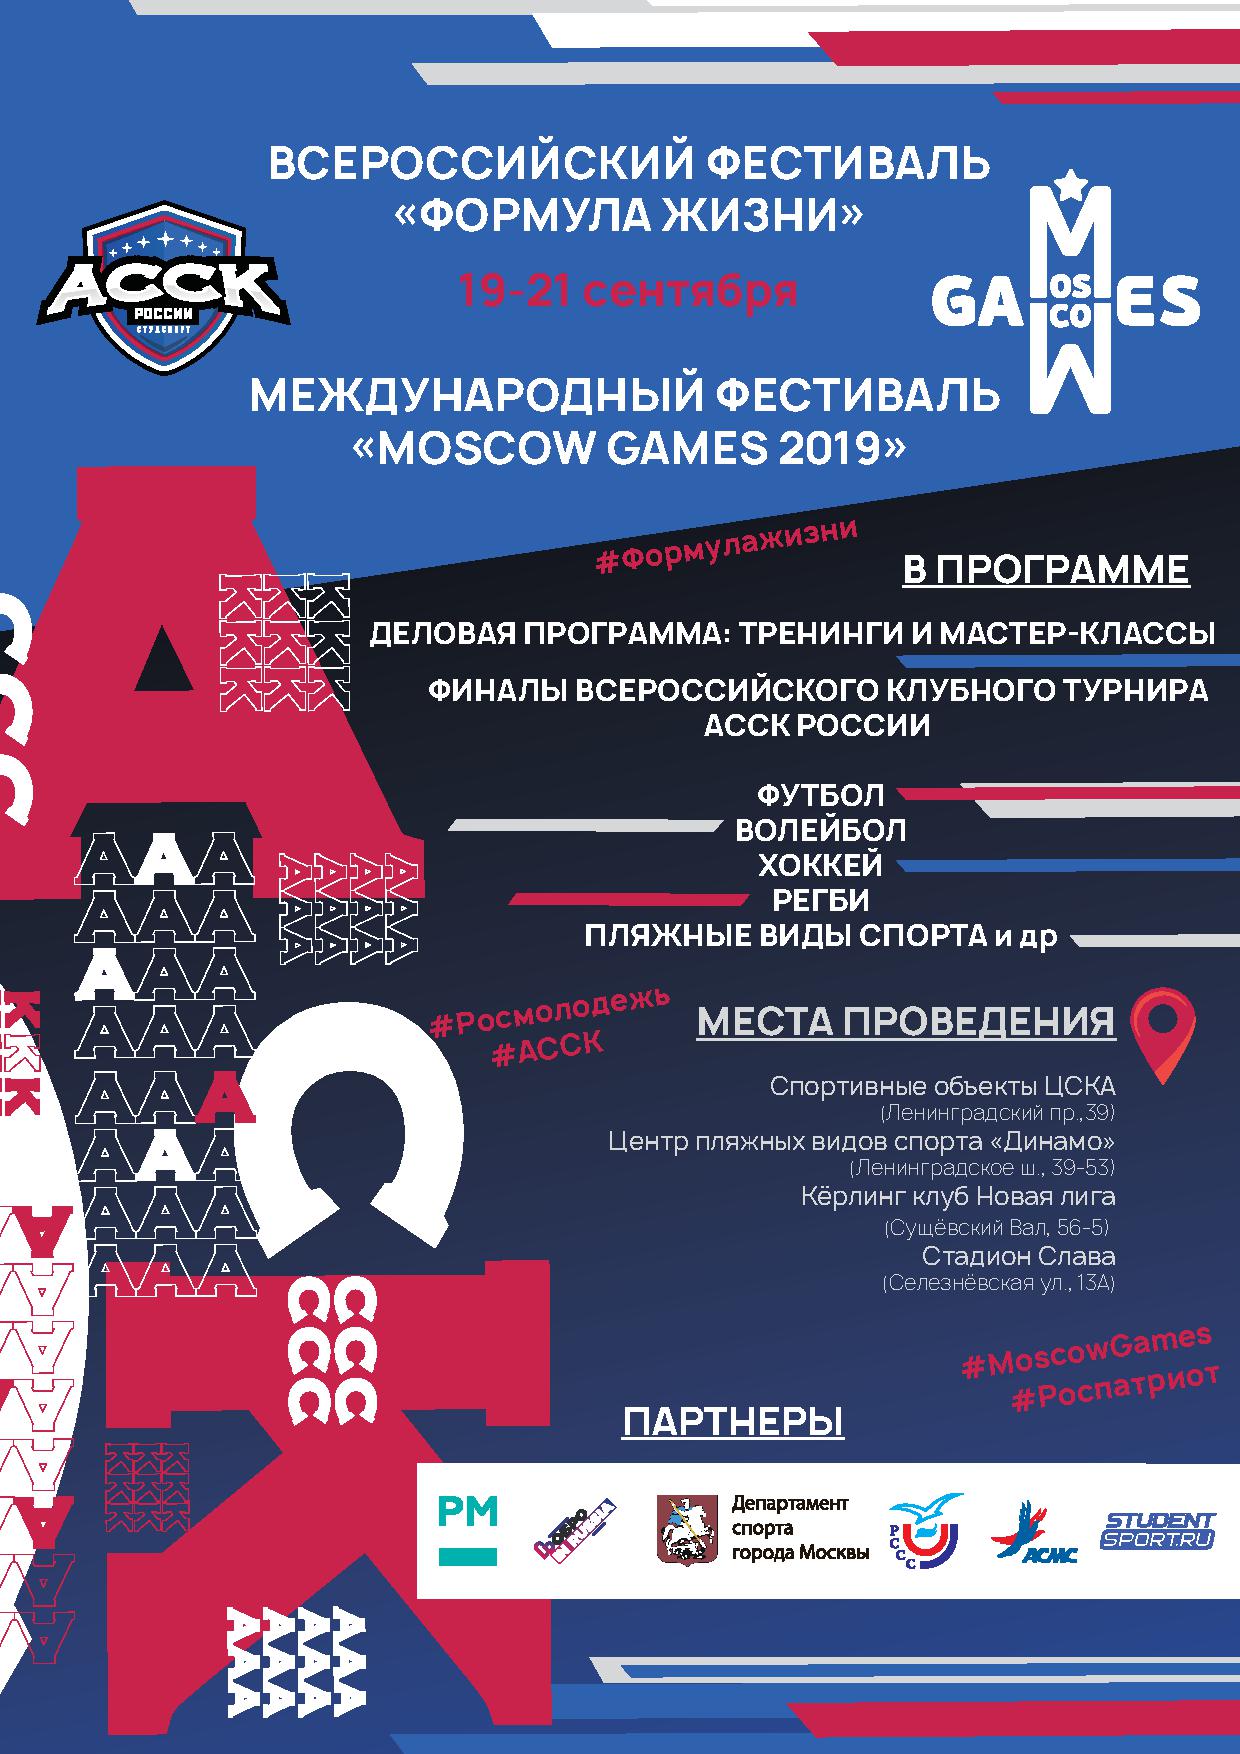 Москва встречает два крупнейших студенческих спортивных фестиваля